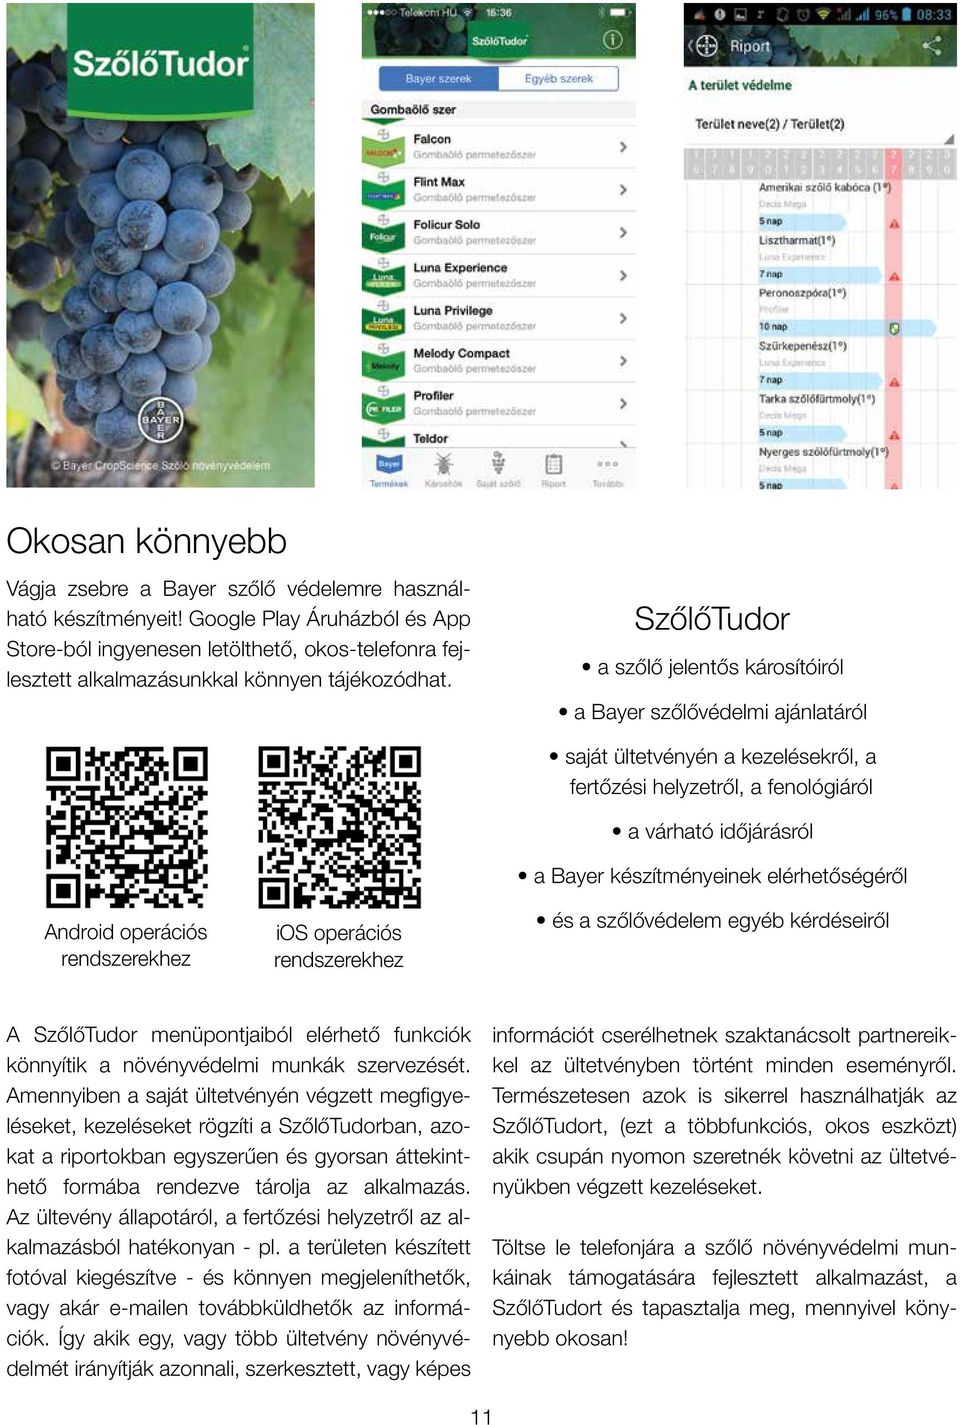 SzőlőTudor a szőlő jelentős károsítóiról a Bayer szőlővédelmi ajánlatáról Android operációs rendszerekhez ios operációs rendszerekhez saját ültetvényén a kezelésekről, a fertőzési helyzetről, a